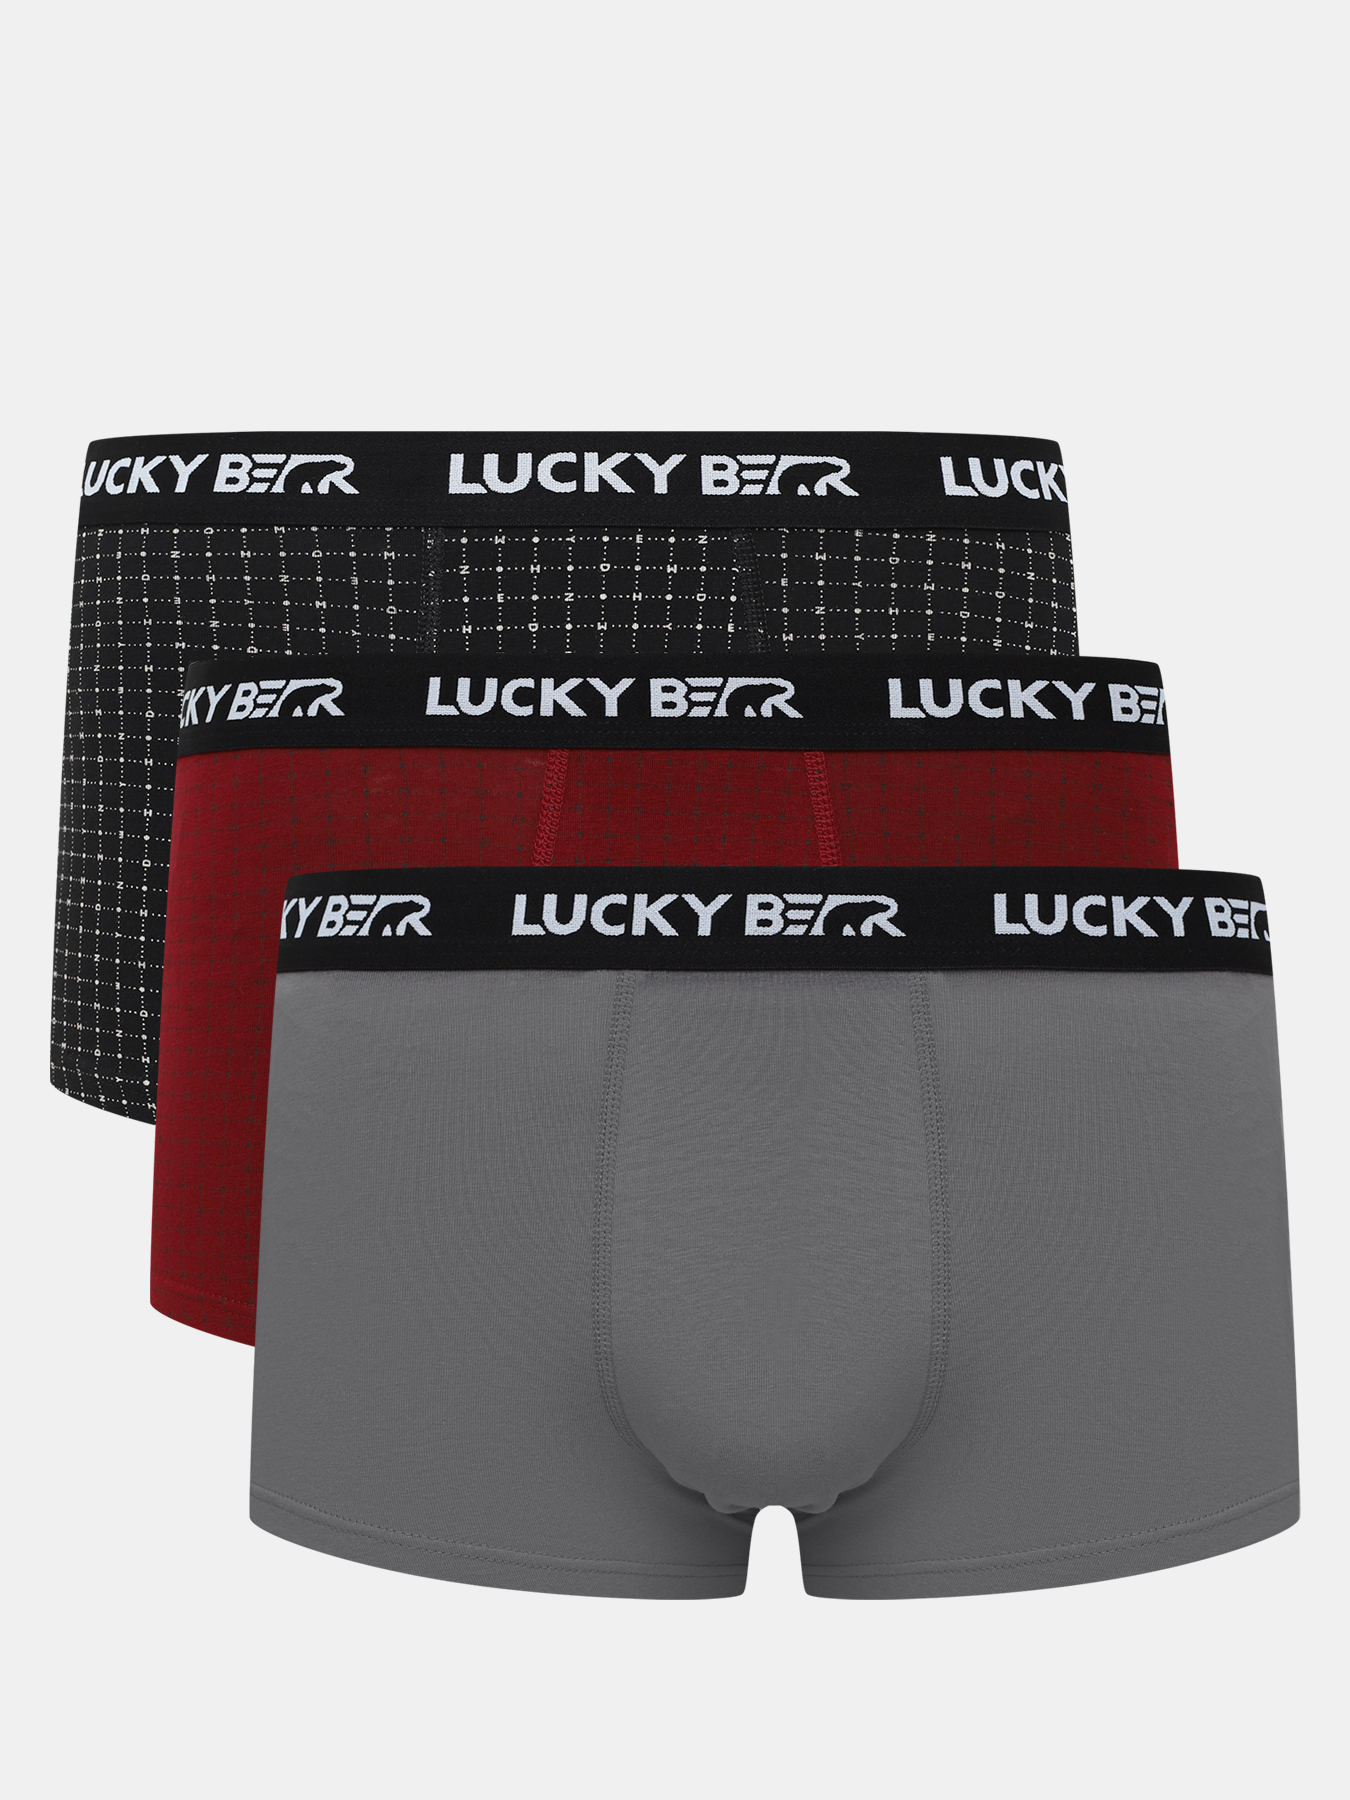 Комплект трусов мужских Lucky Bear 450599 разноцветных S